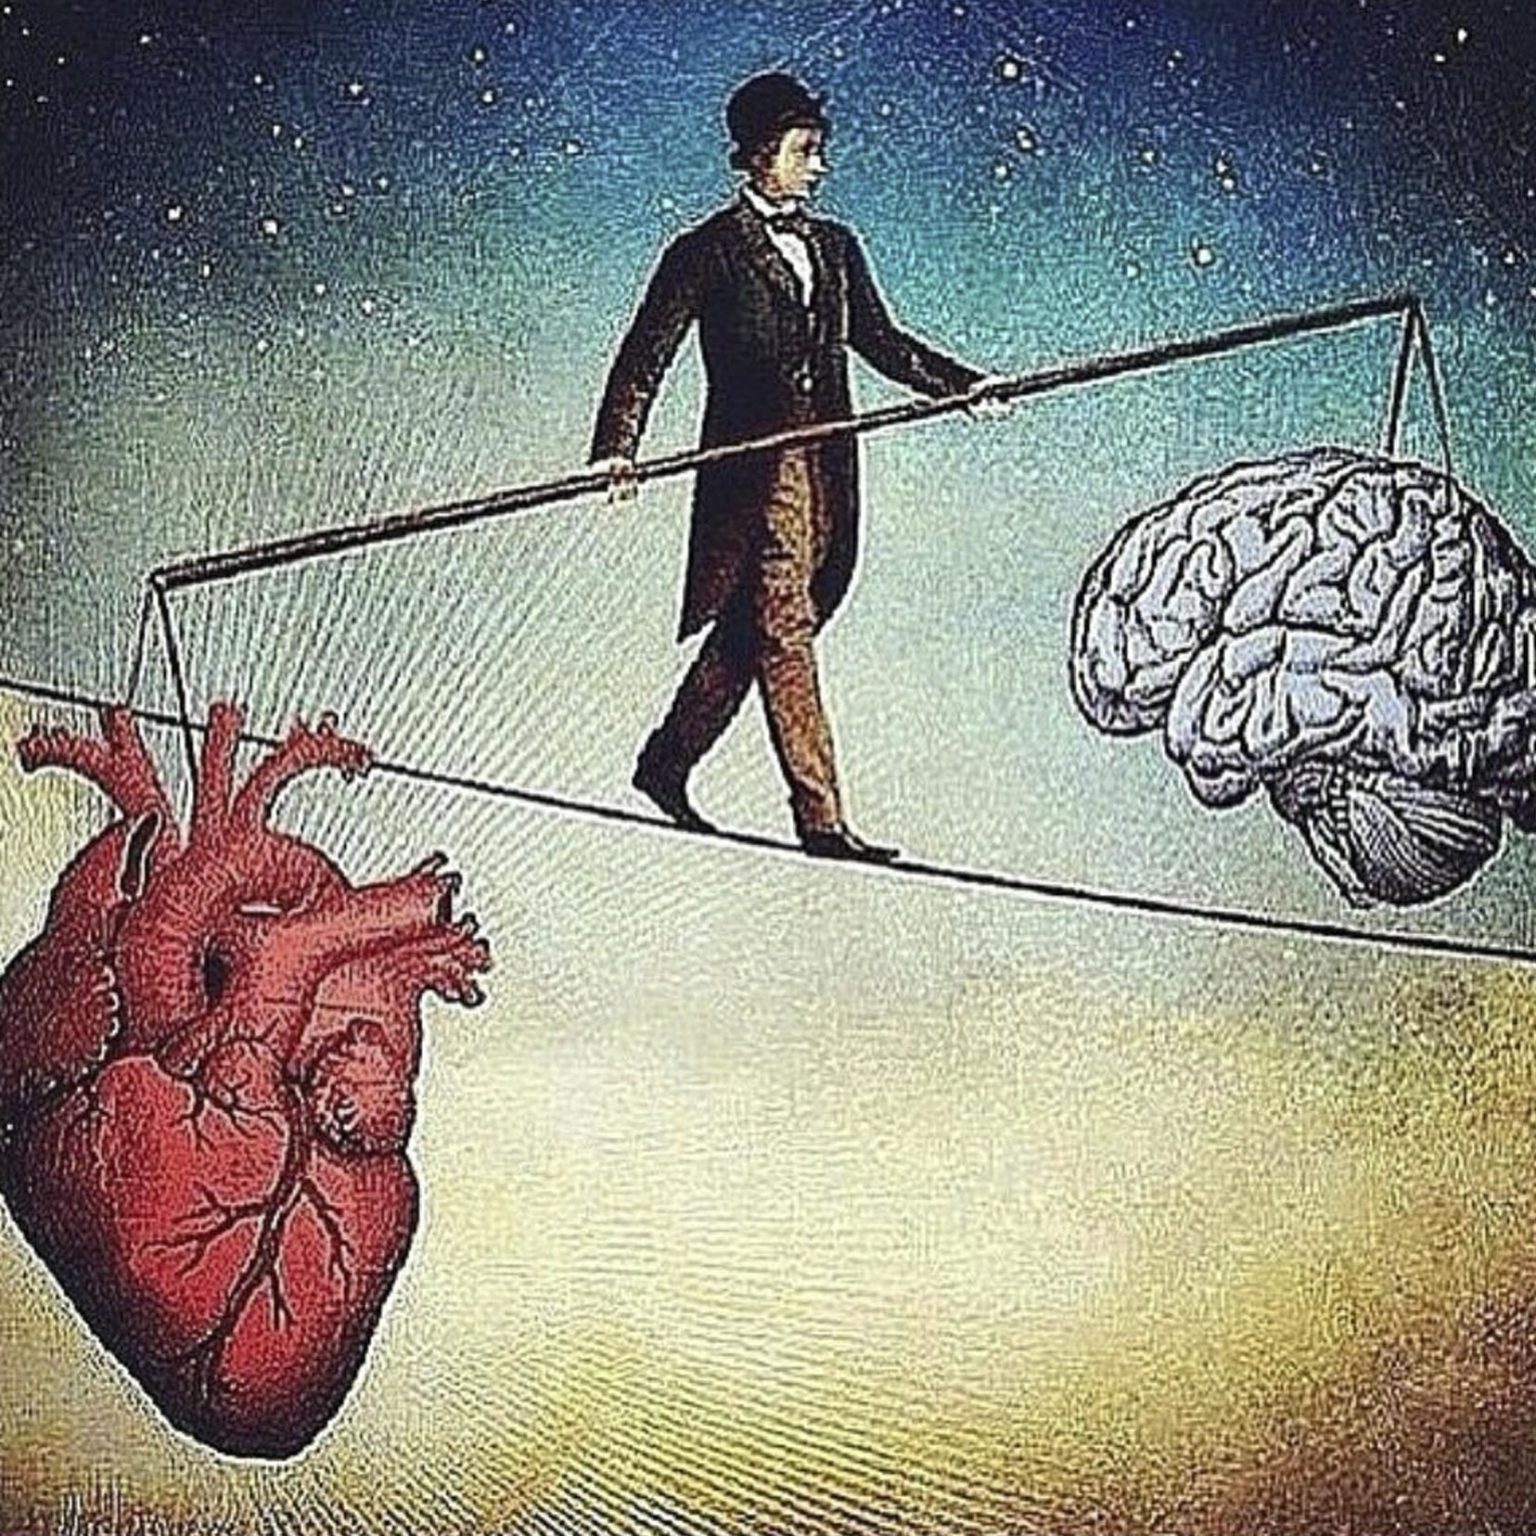 Переосмысление проблемы. Мозг и сердце. Ум и сердце. Борьба разума и чувств. Балансировать между разумом и сердцем.